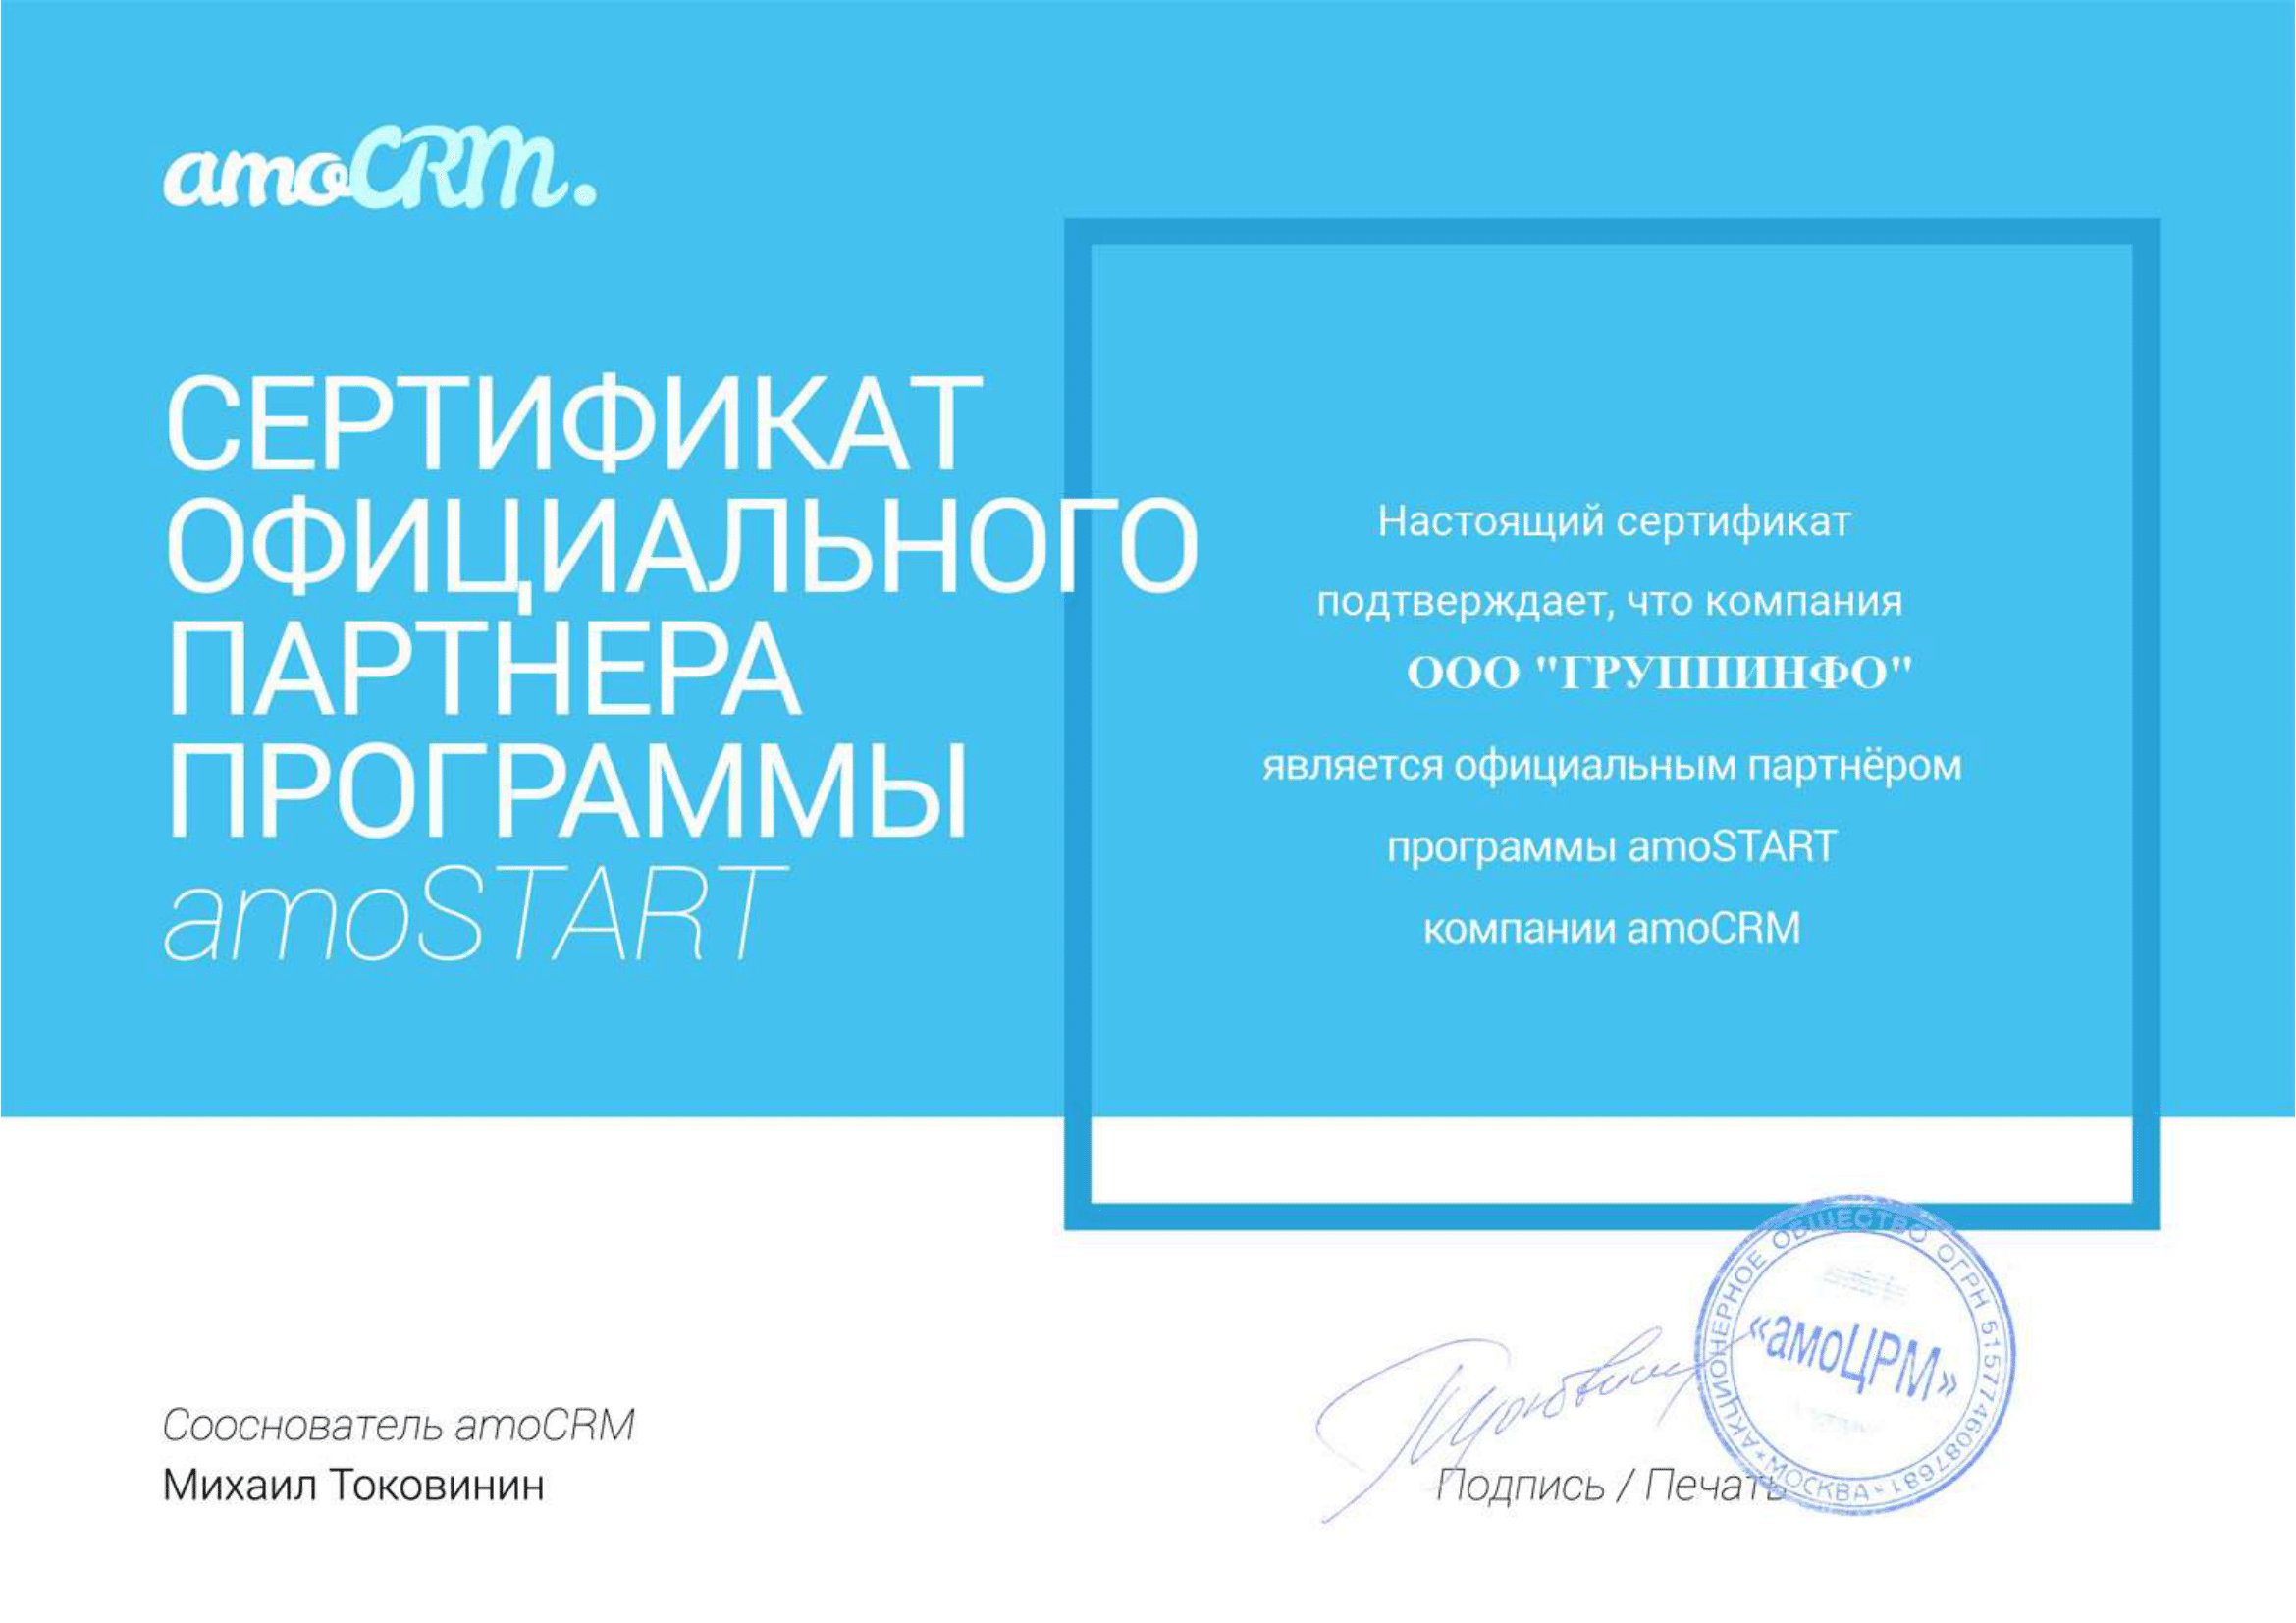 Сертификат ООО ГРУППИНФО